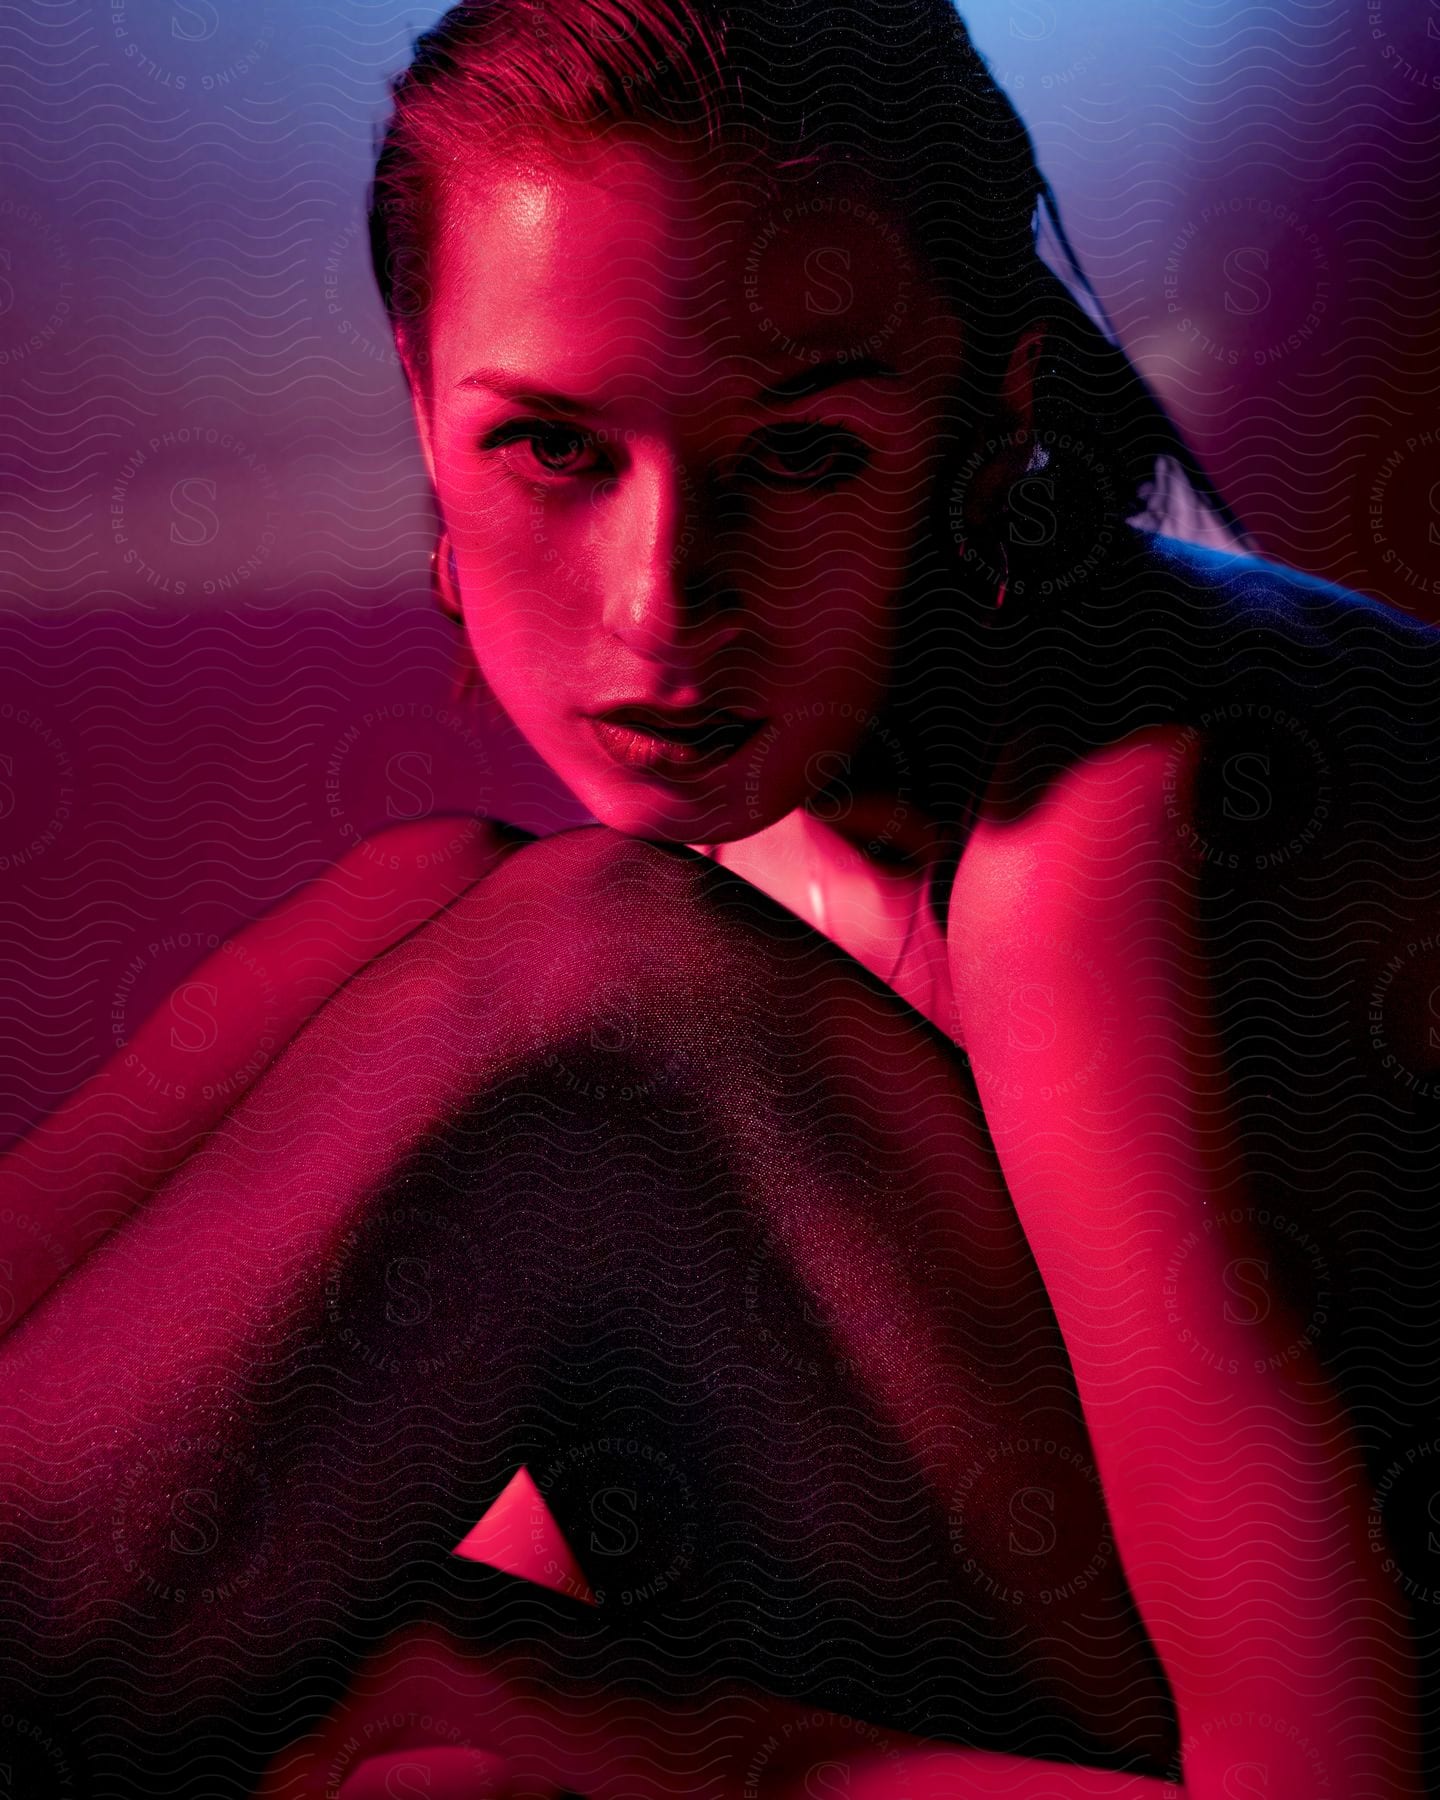 Female models posed chin on knee under red studio lighting